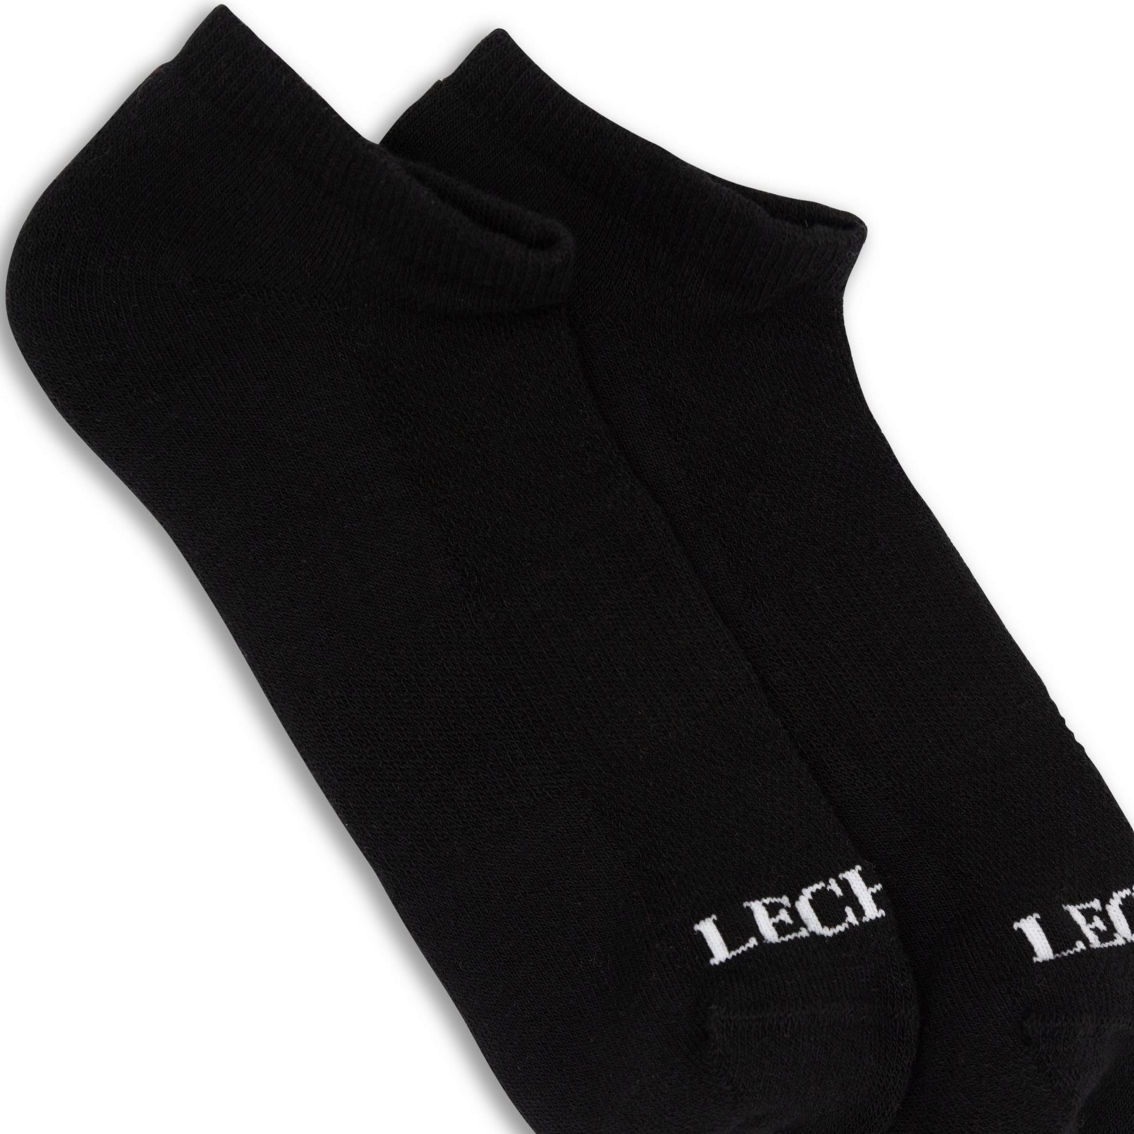 LECHERY Unisex Low-cut Socks - Image 2 of 4